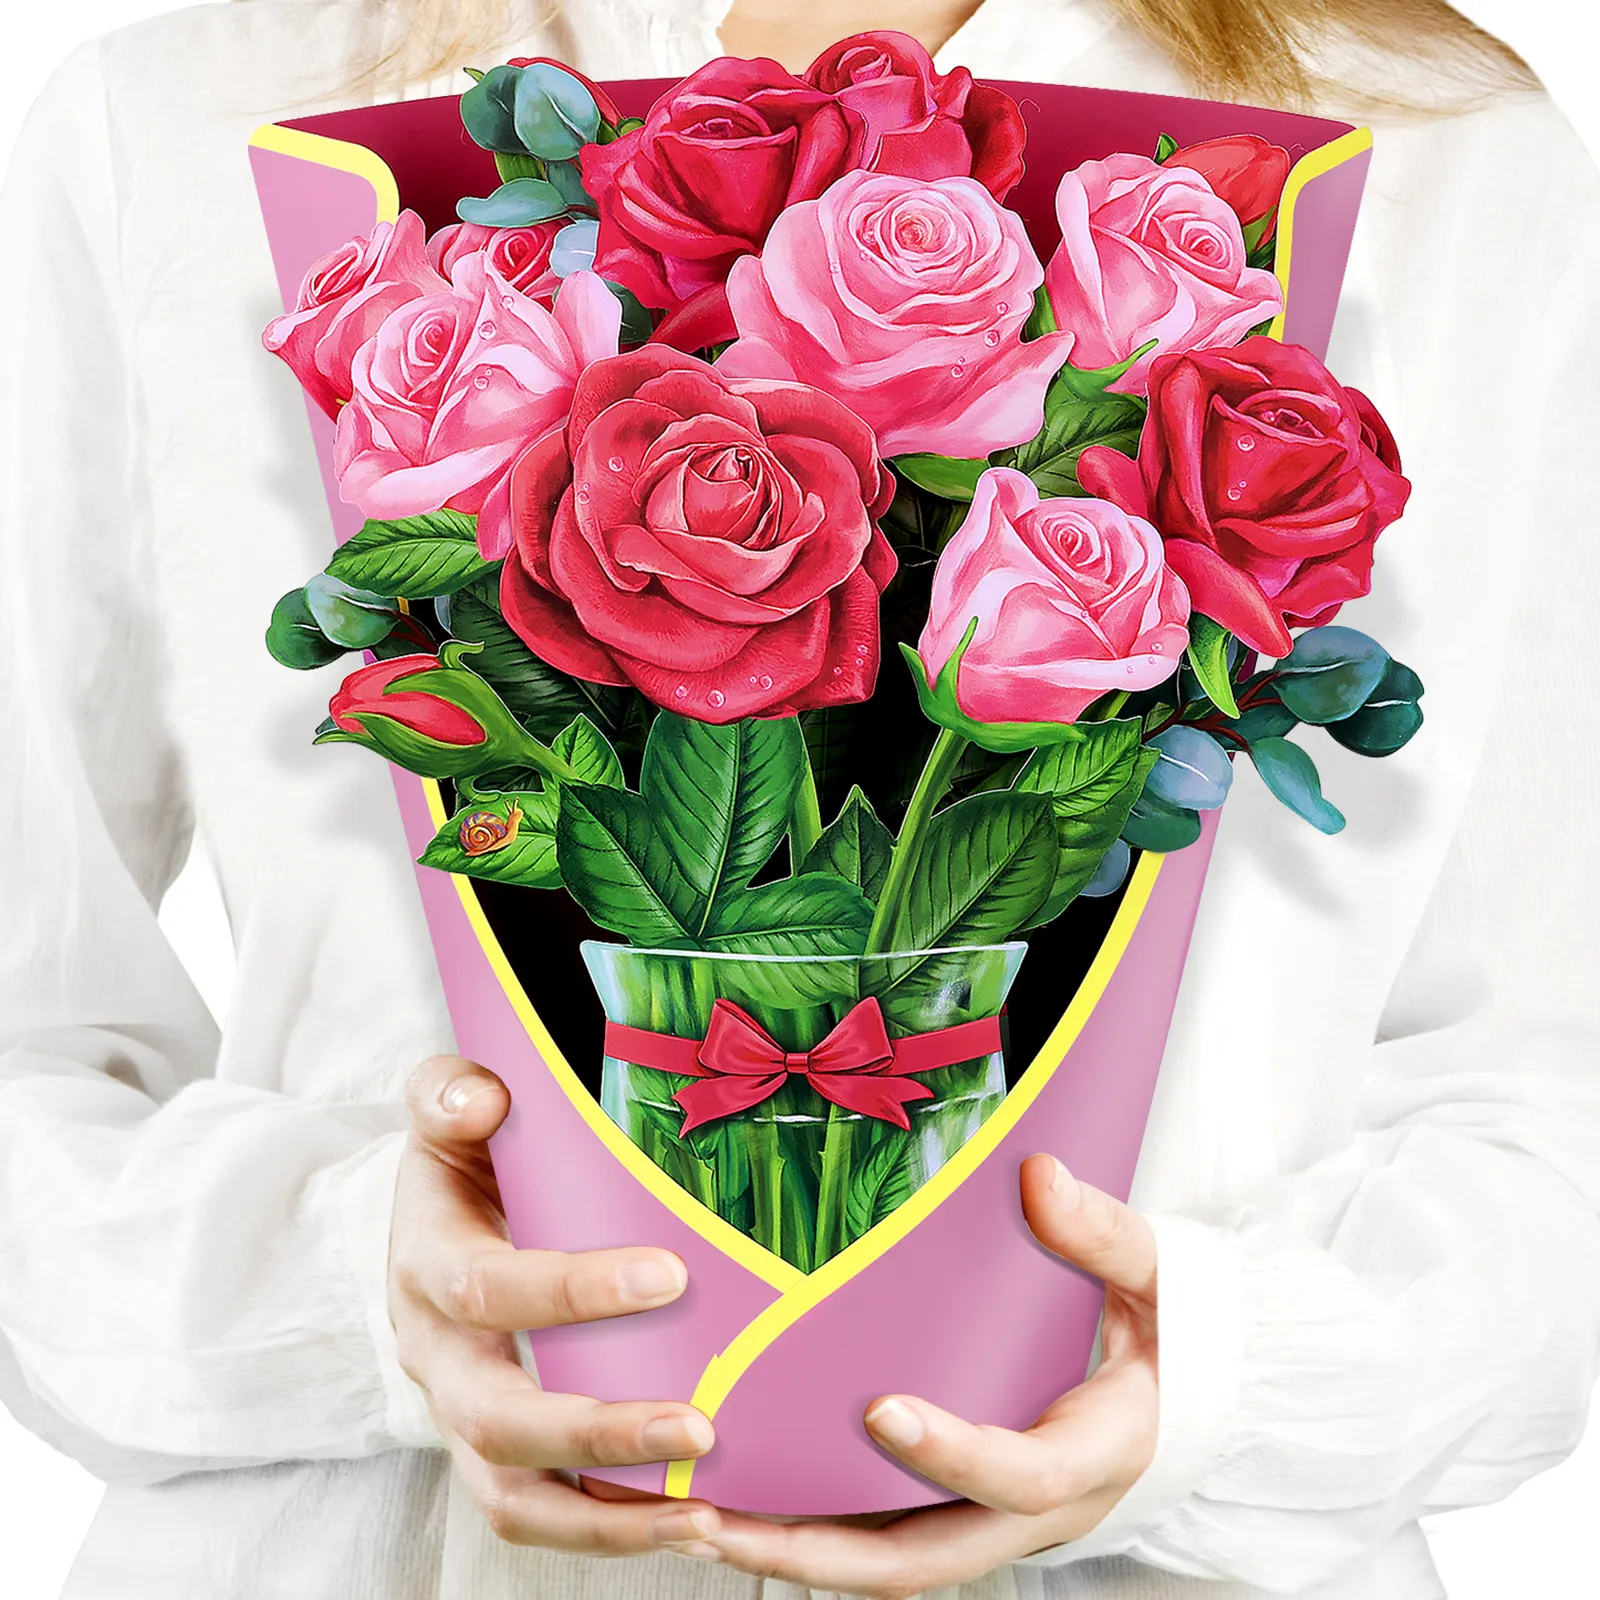 Originales Design kreative Valentinstagsgeschenke hochwertige Pop-Up-Blumen-Rosenstrauß-Grosskarte aus Papier